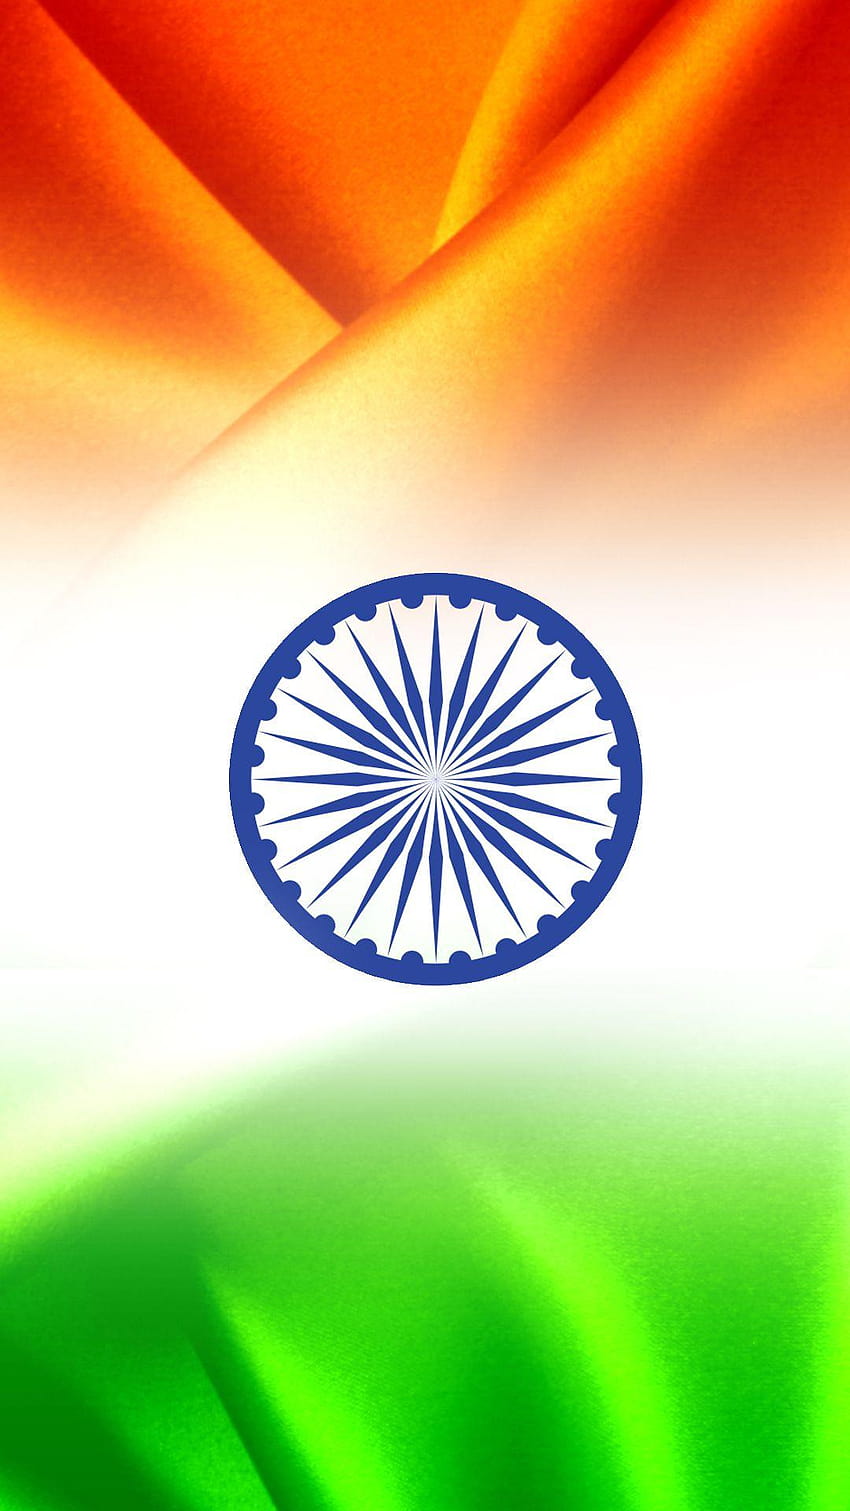 Bandera de India para teléfono móvil 11 de 17 – India tricolor, bandera de India fondo de pantalla del teléfono